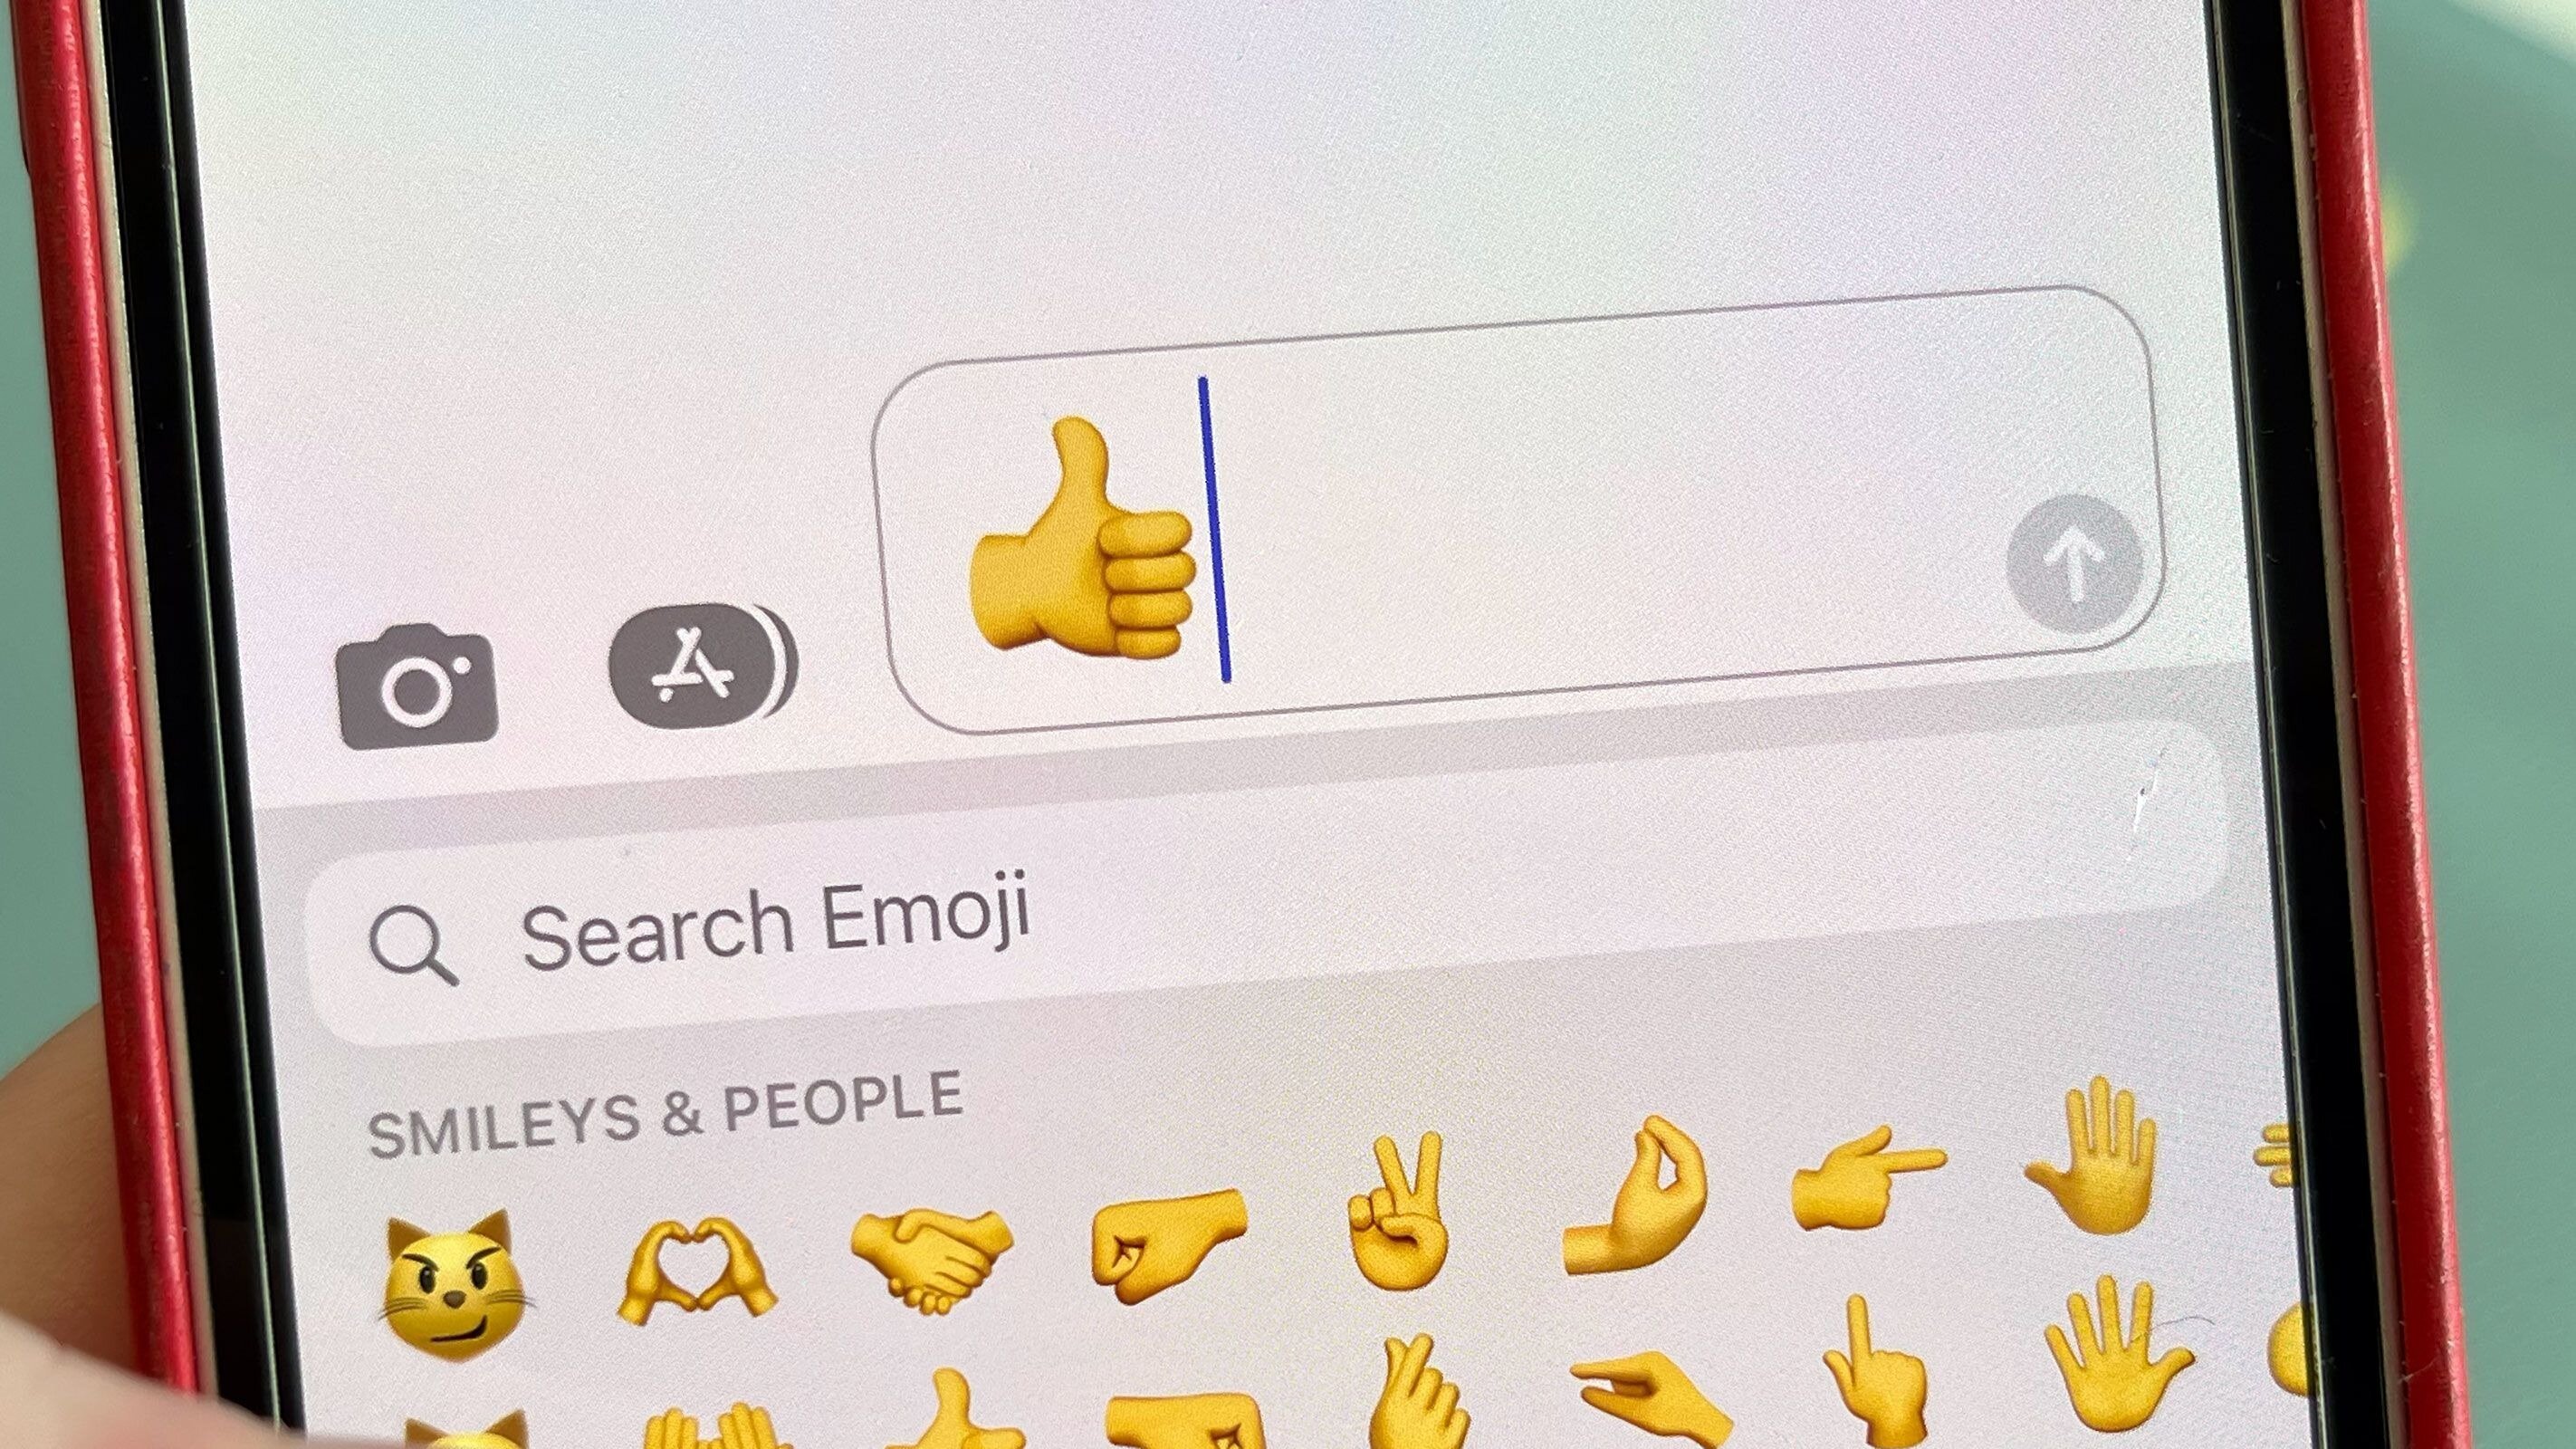 Καναδός δικαστής αποφαίνεται ότι το emoji "thumbs up" μετράει ως συμφωνία σύμβασης